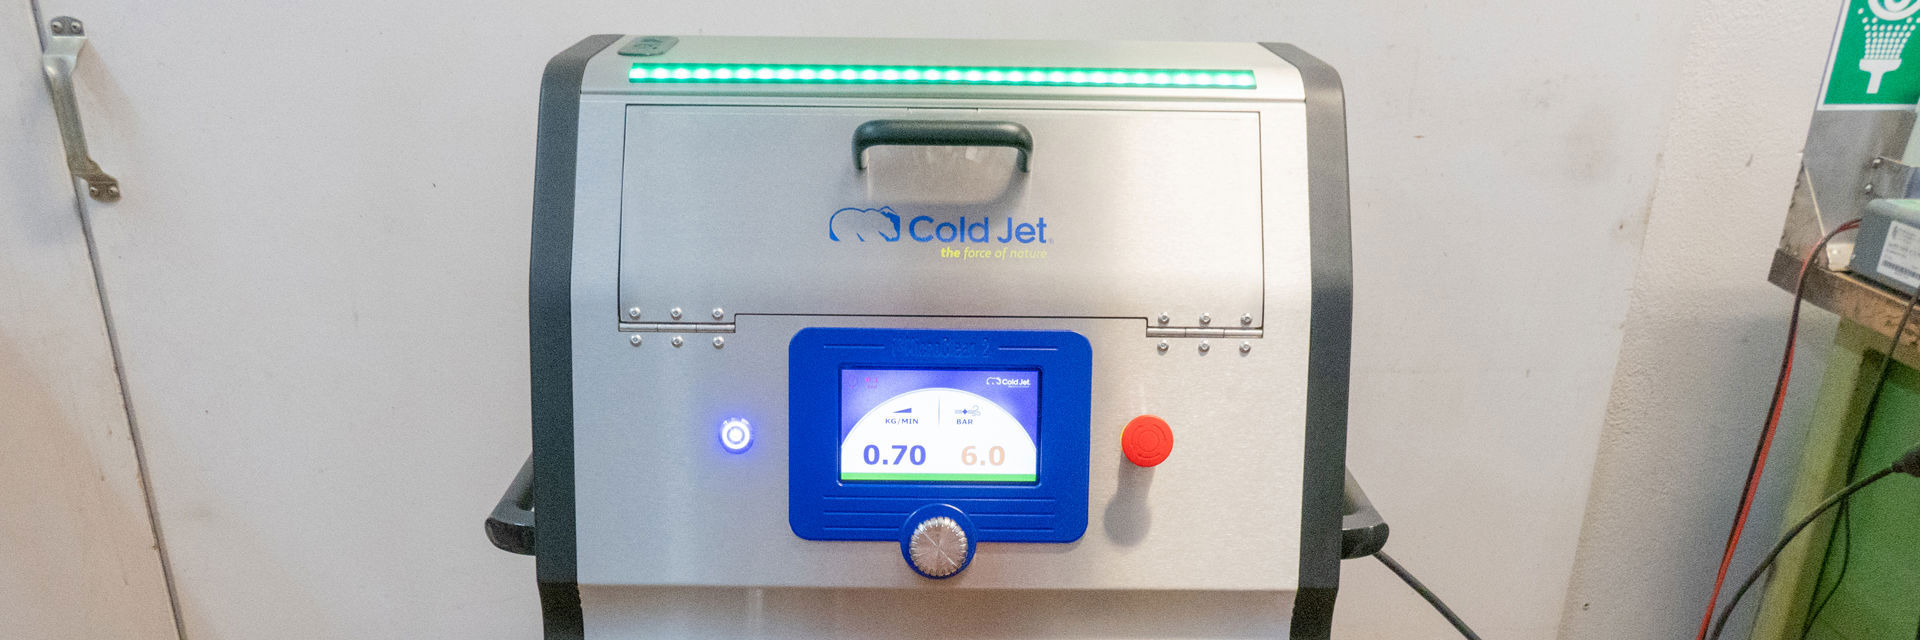 Cold Jet i³ MicroClean 2 - das Präzisionsreinigungssystem mit Trockeneis